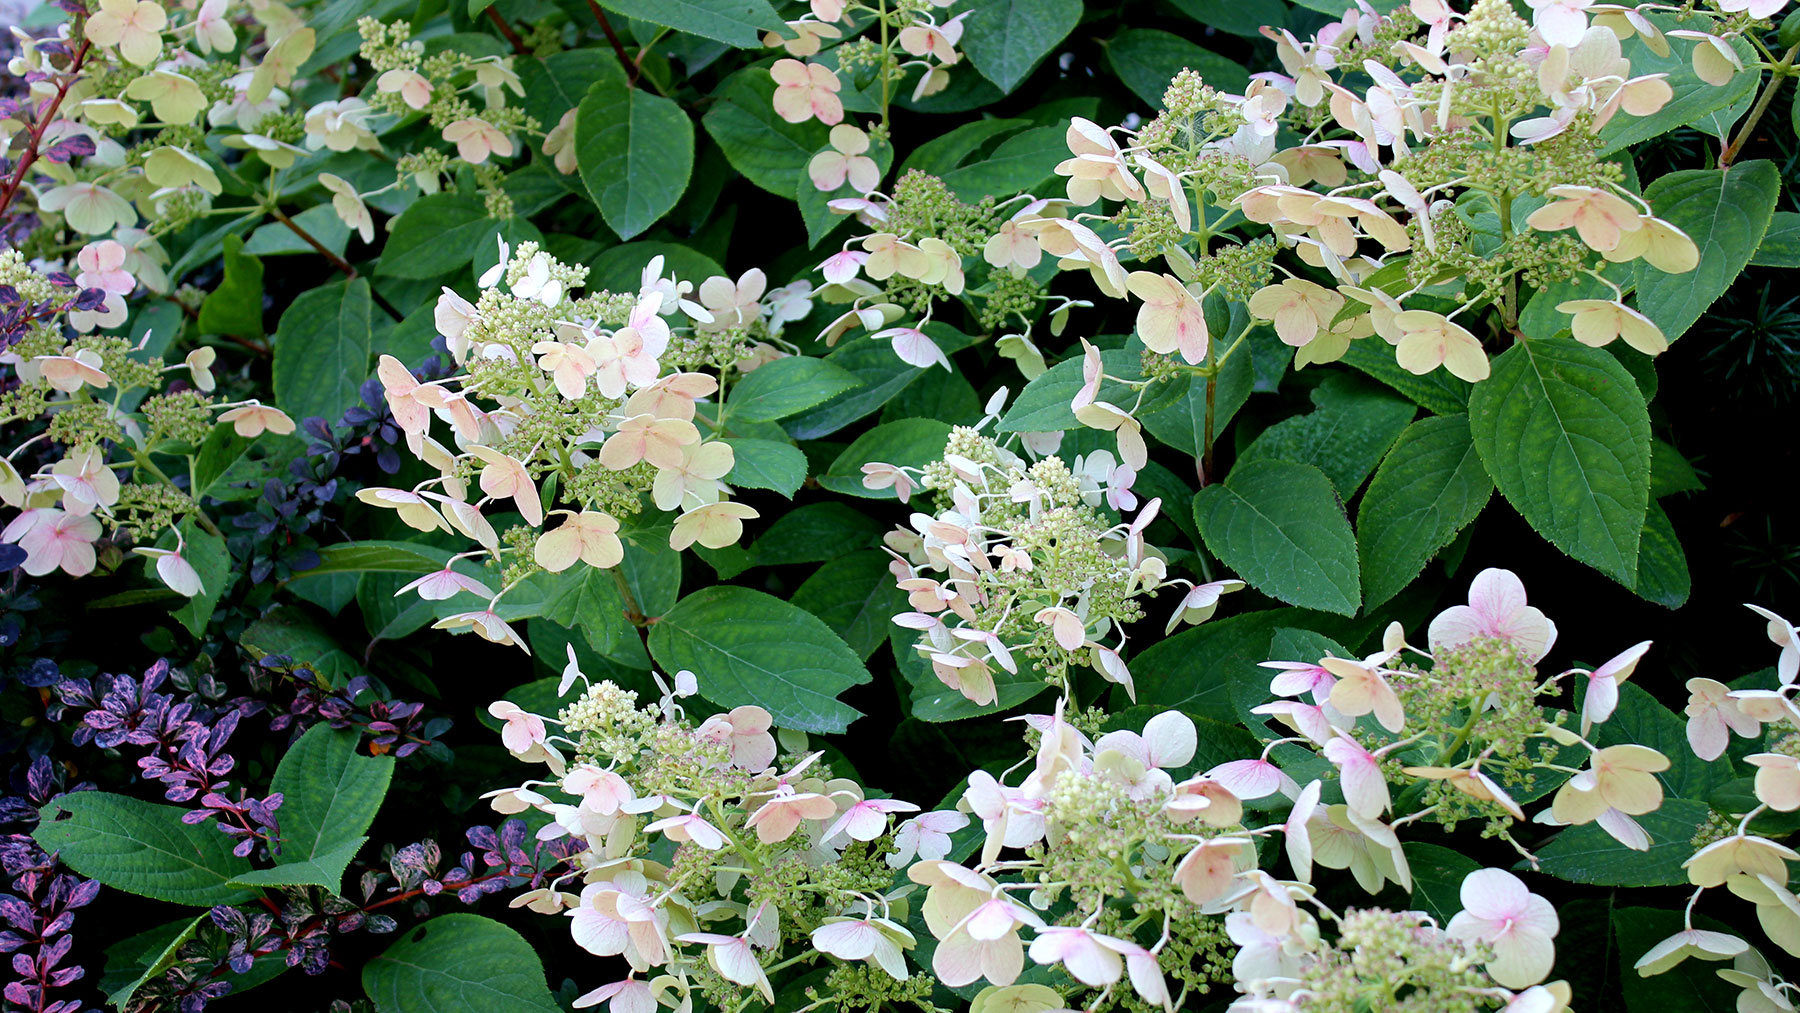 Hydrangea Tardiva in bloom